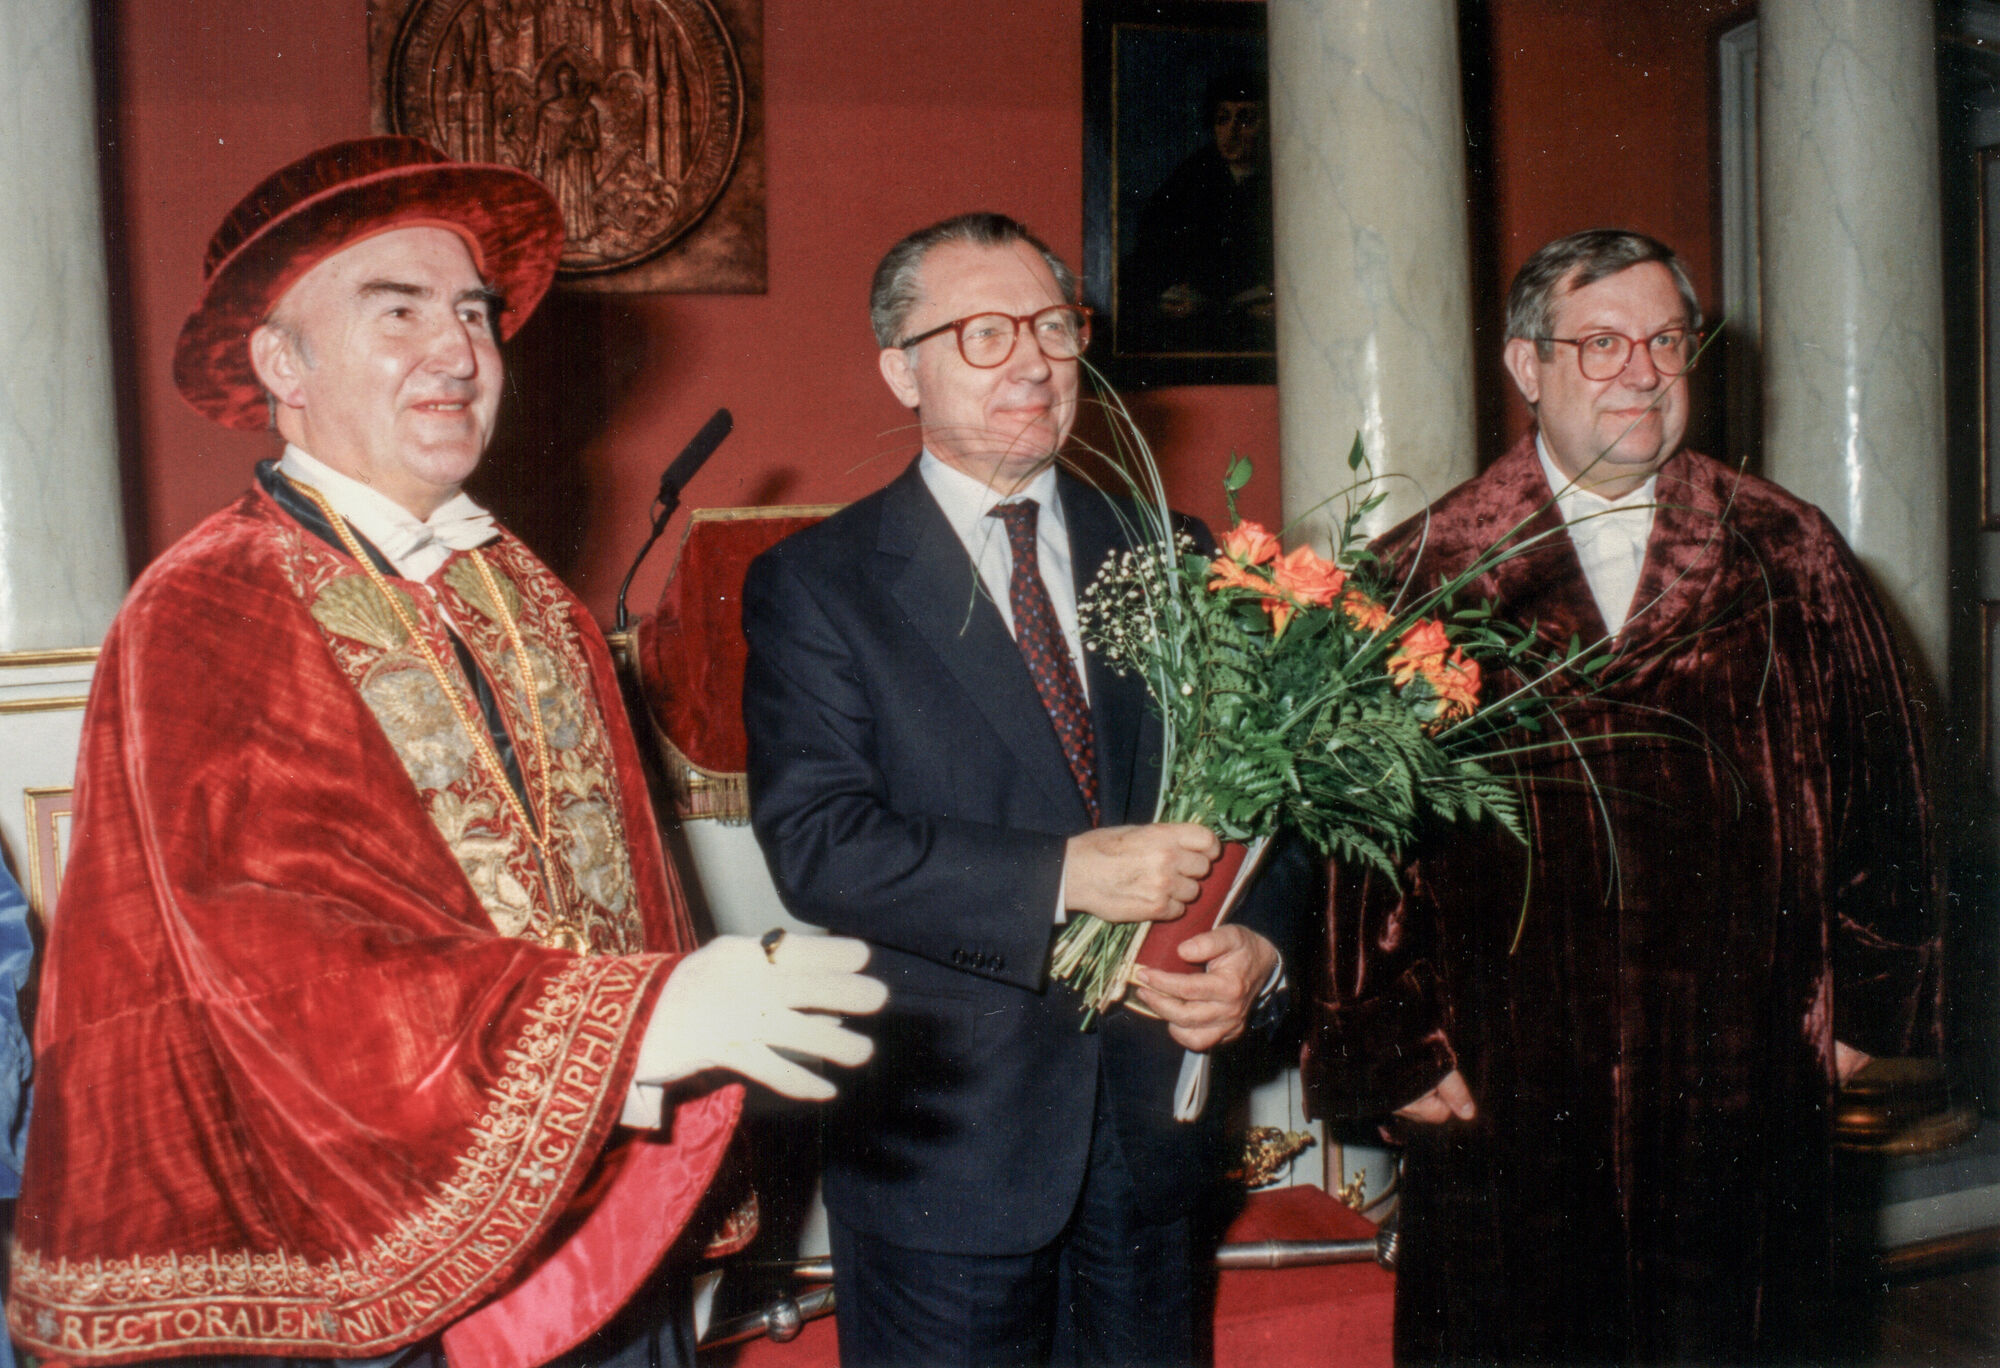 Verleihung der Ehrenpromotion an Jacques Delors 1994 in der Aula der Universität Greifswald mit dem damaligen Rektor Prof. Zobel 